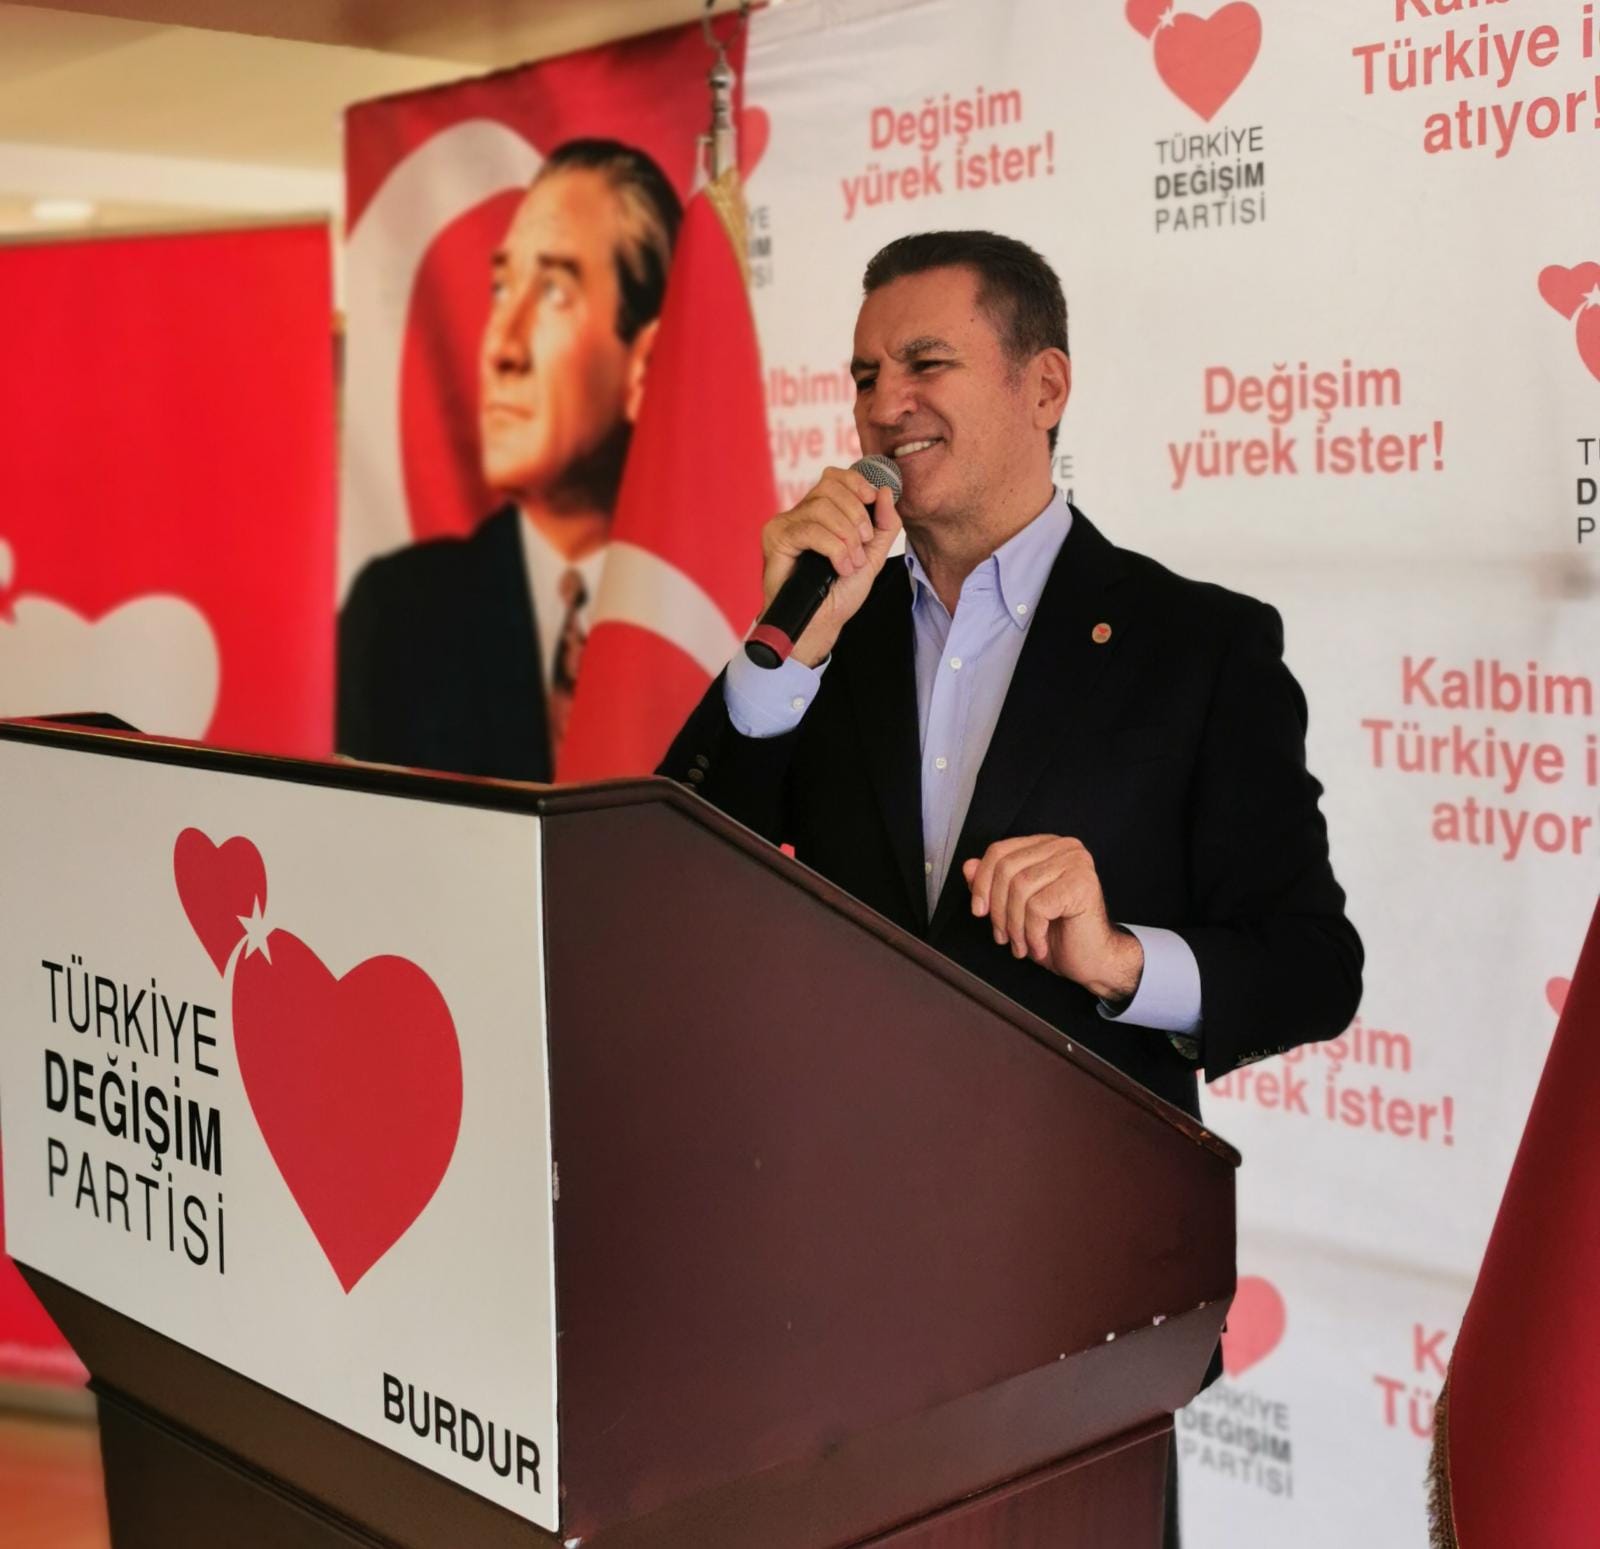 Mustafa Sarıgül: “Türkiye’de, % 30 küsen oy var ve o oylar inşallah Türkiye Değişim Partisi’ne gelecek!”